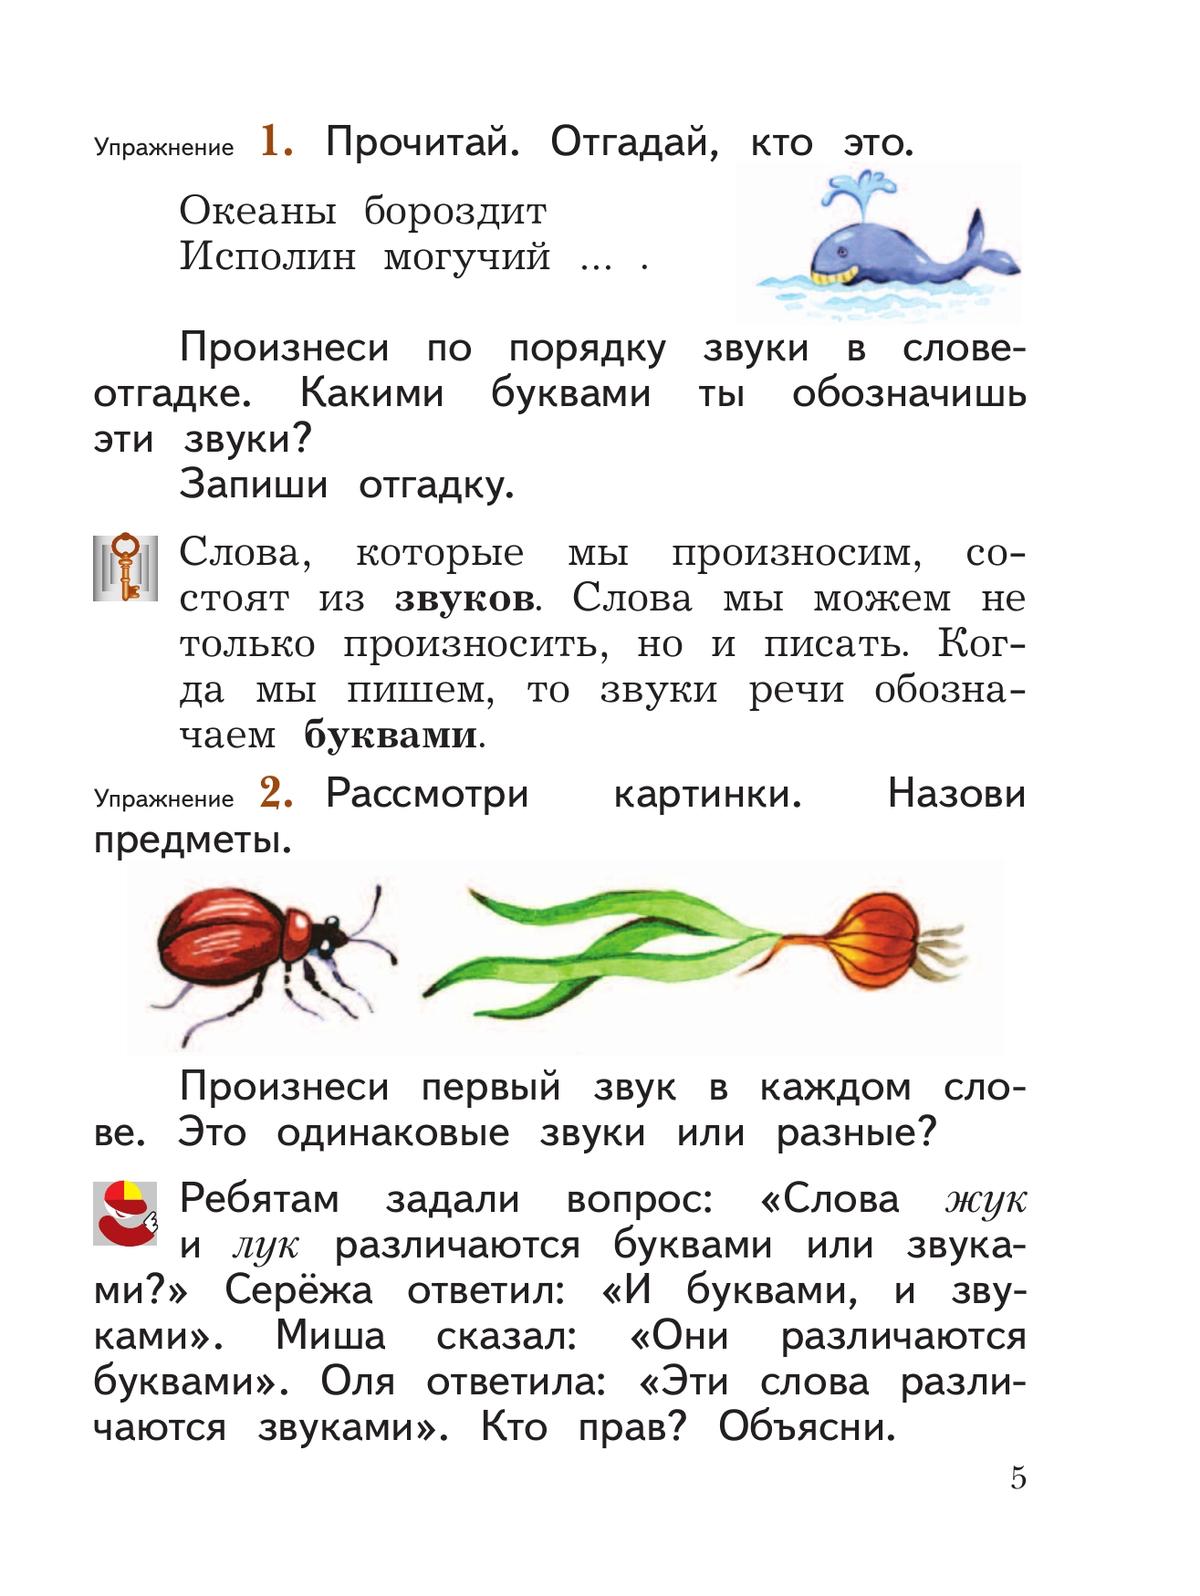 Русский язык. 2 класс. Учебное пособие. В 2 ч. Часть 1 10